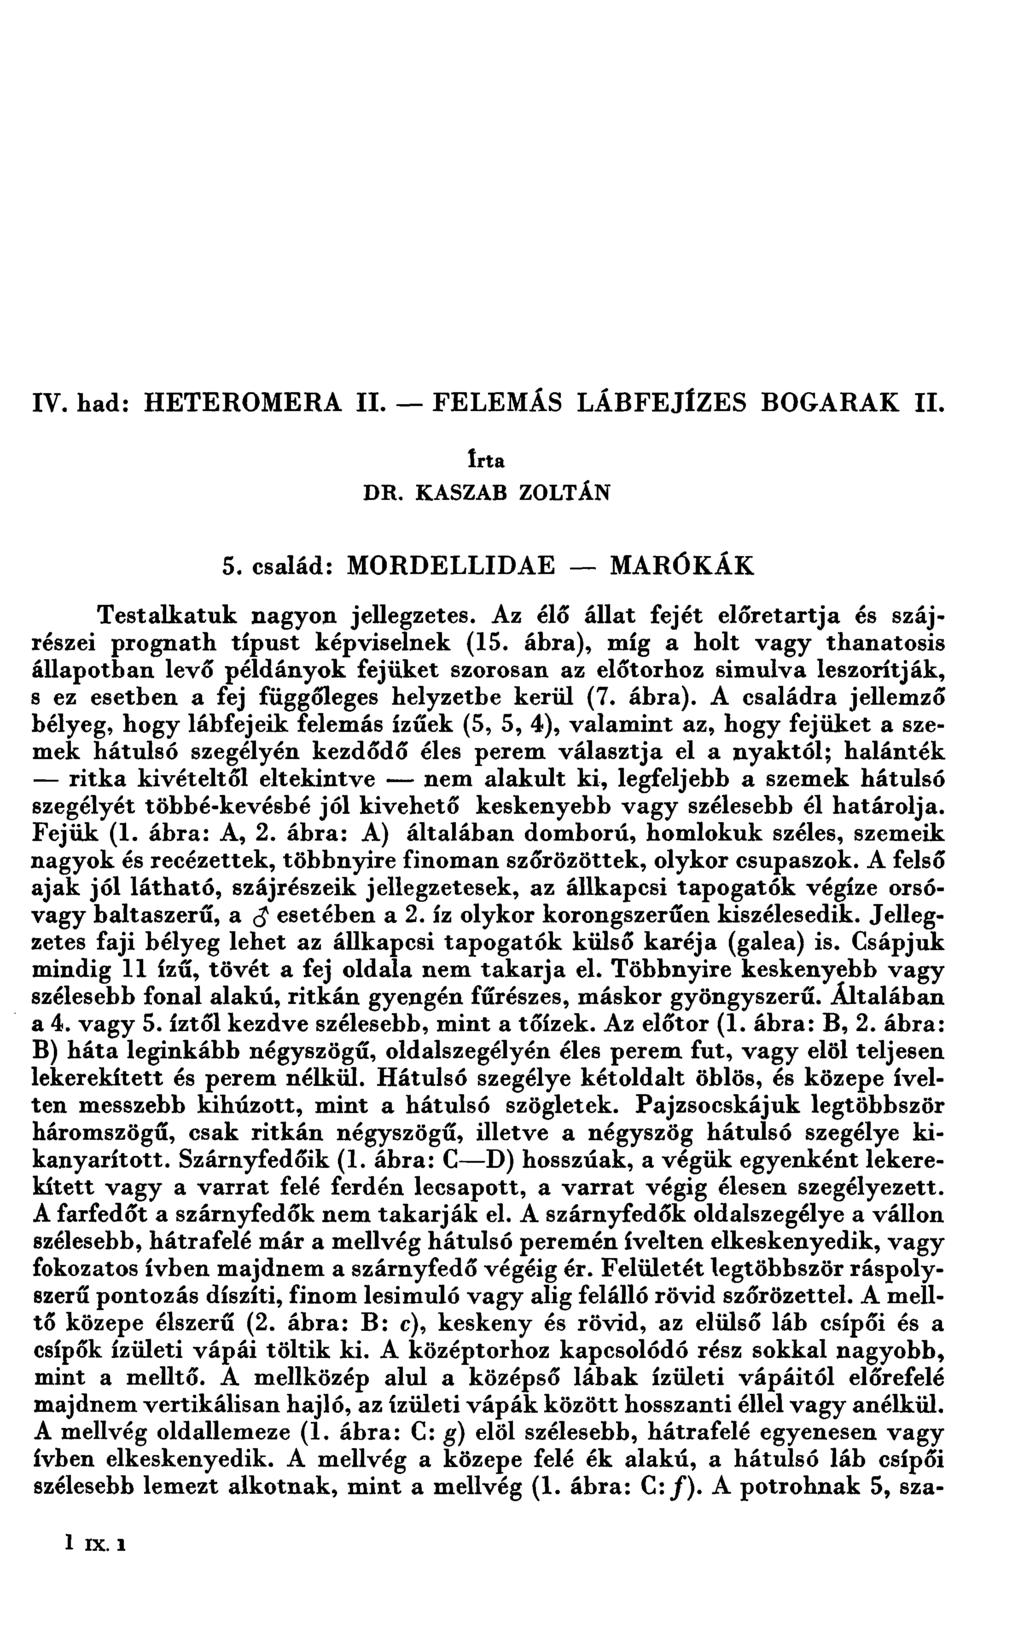 IV. had: HETEROMERA II. - FELEMĂS LĂBFEJÍZES BOGARAK II. Iı-ta DR. KASZAB ZOLTÁN 5. család: MORDELLIDAE -- MARÓKĂK Testalkatuk nagyon jellegzetes.